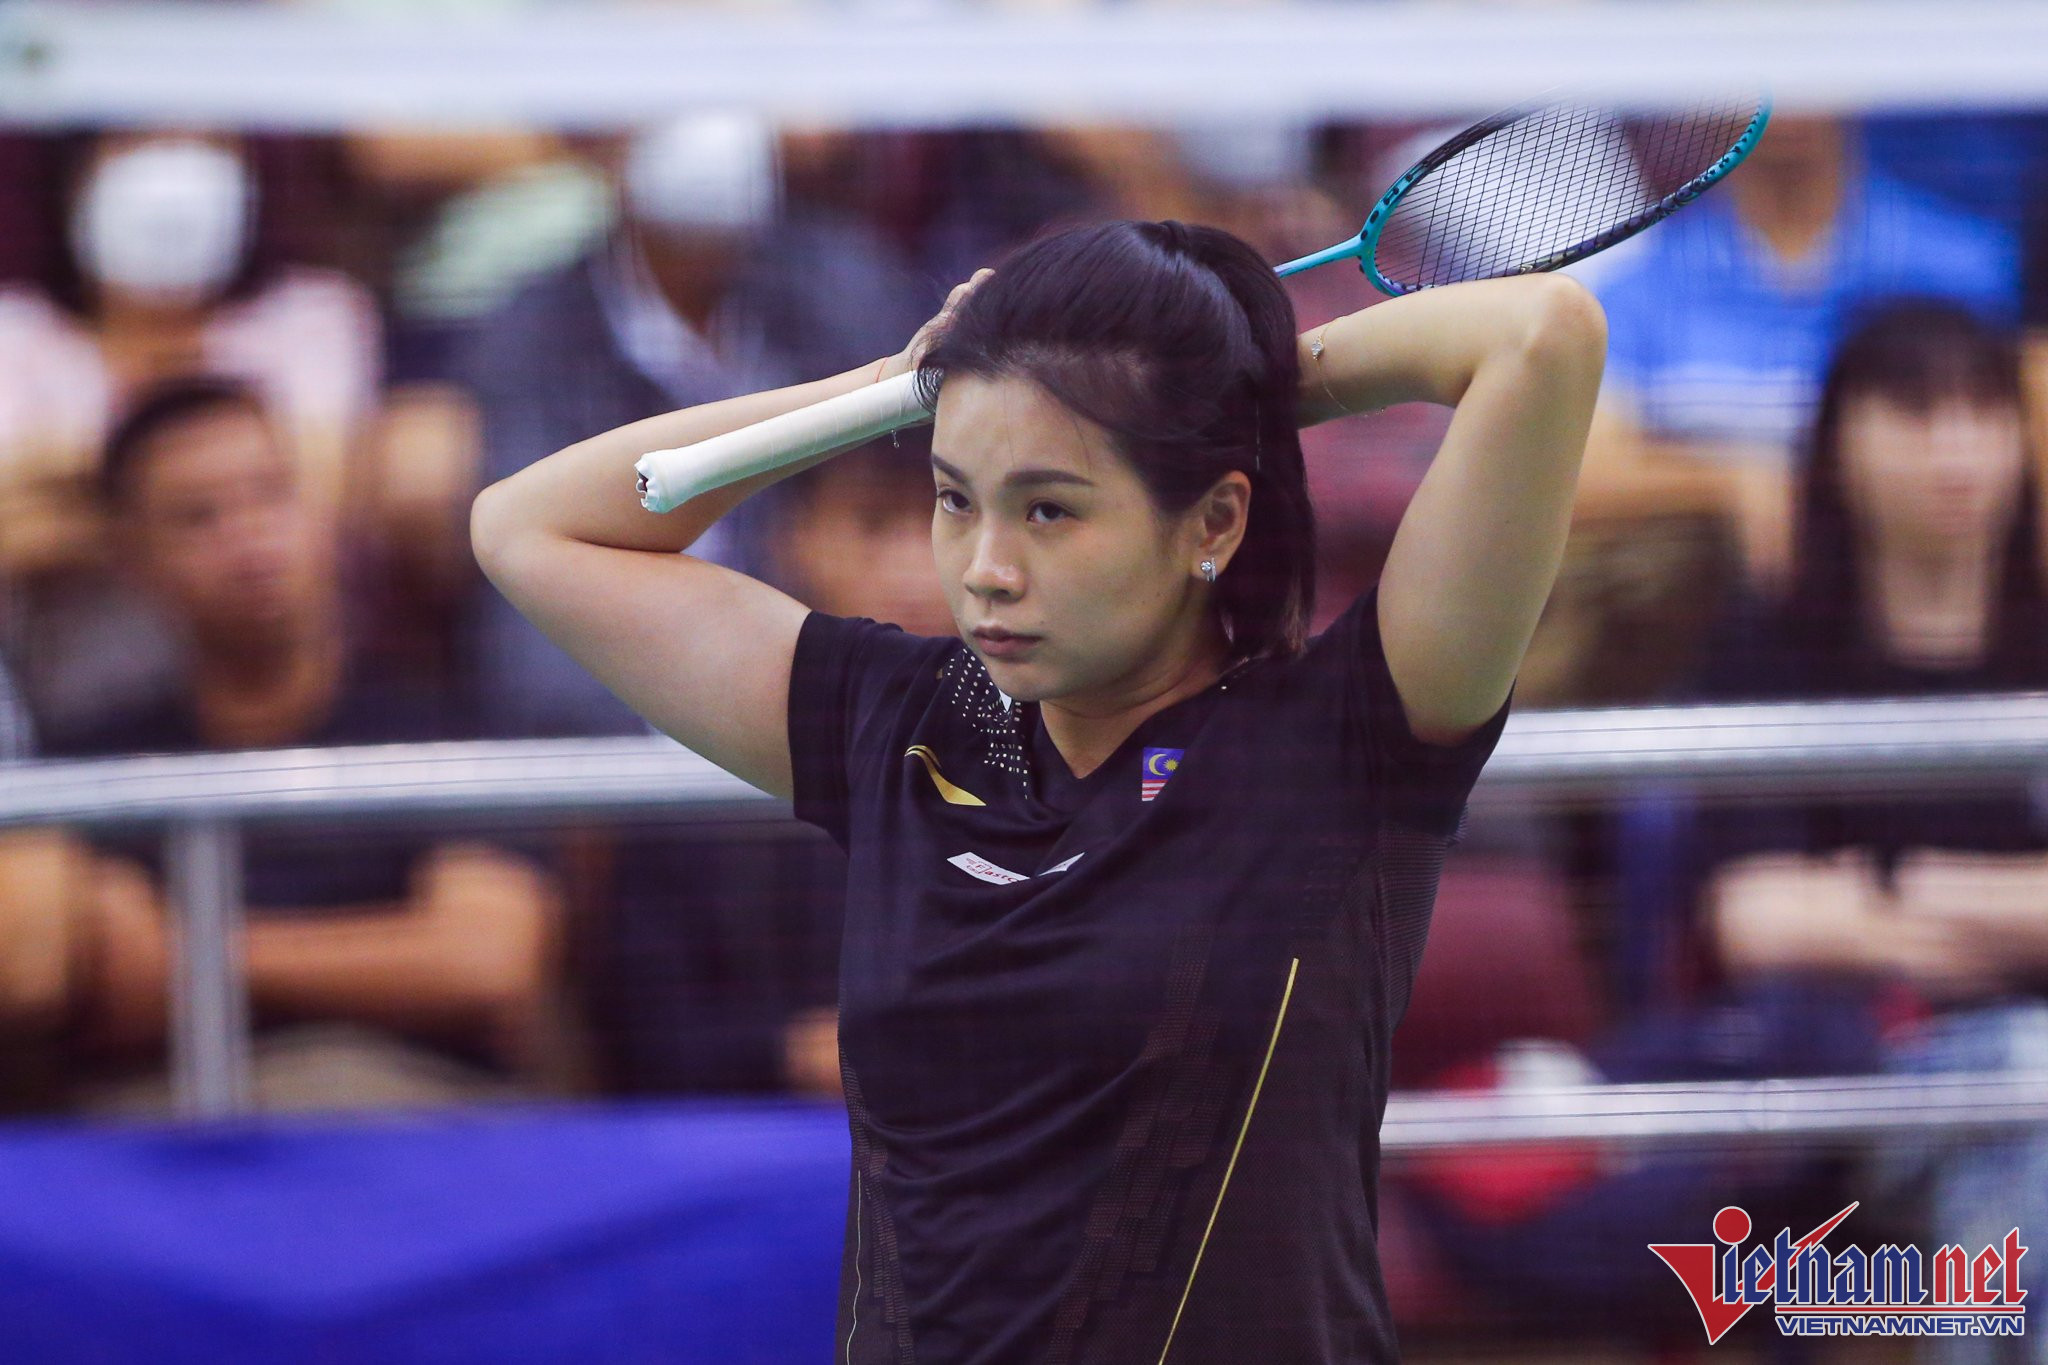 Tay vợt xinh đẹp người Malaysia là Goh Liu Ying dù có chiều cao khiêm tốn nhưng cô sở hữu một lối đánh nhanh nhẹn, sắc sảo. Cô từng giúp Malaysia giành HCB tại Olympic Rio 2016 nội dung đội nam nữ